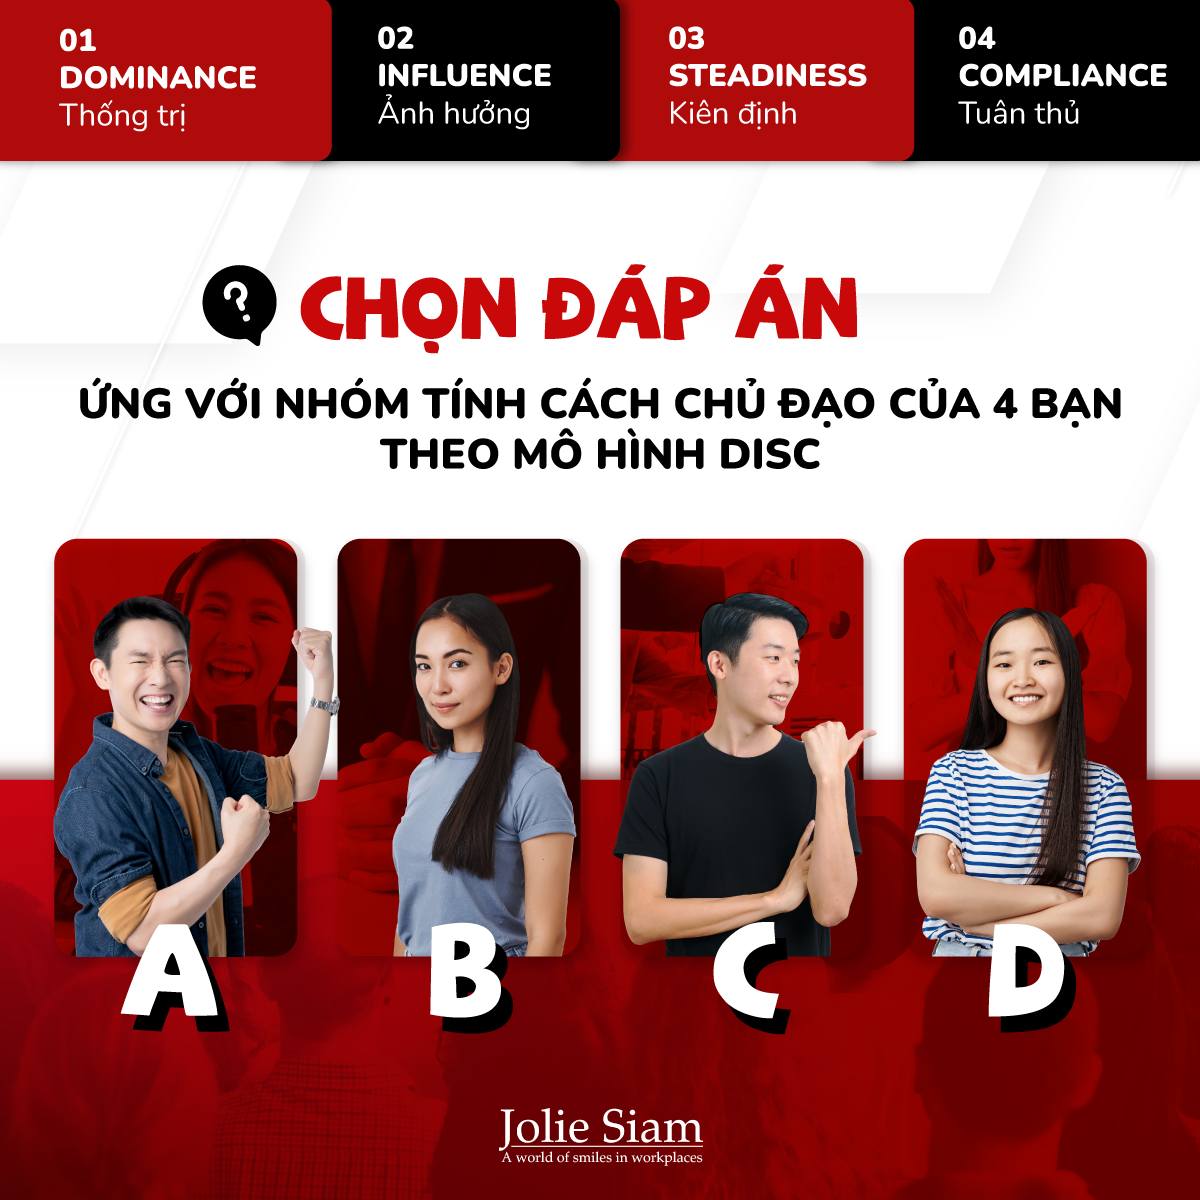 Job test - Jolie Siam